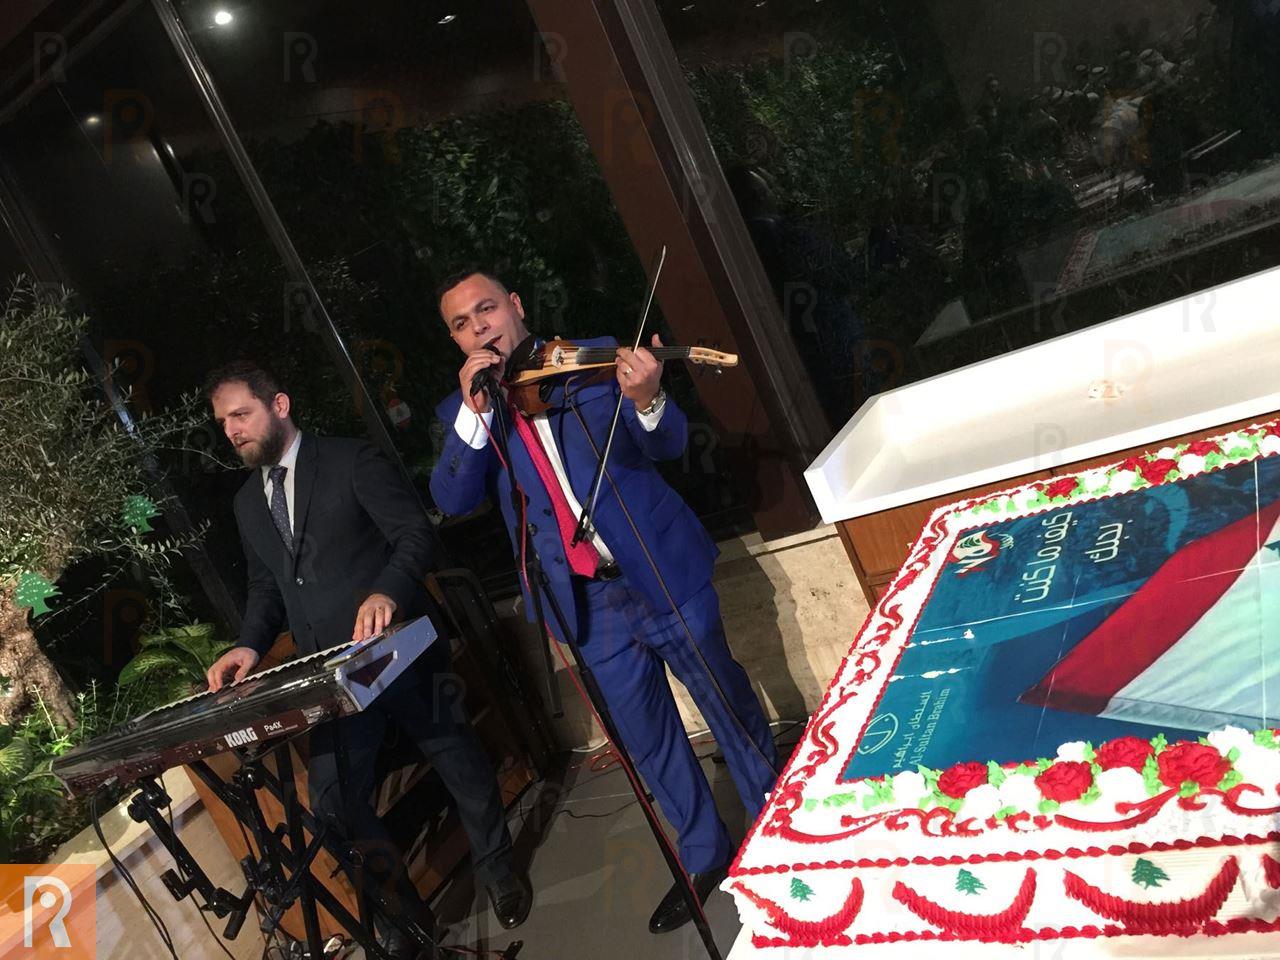 احتفال بمناسبة الذكرى الـ 75 لاستقلال لبنان في مطعم السلطان ابراهيم الكويت